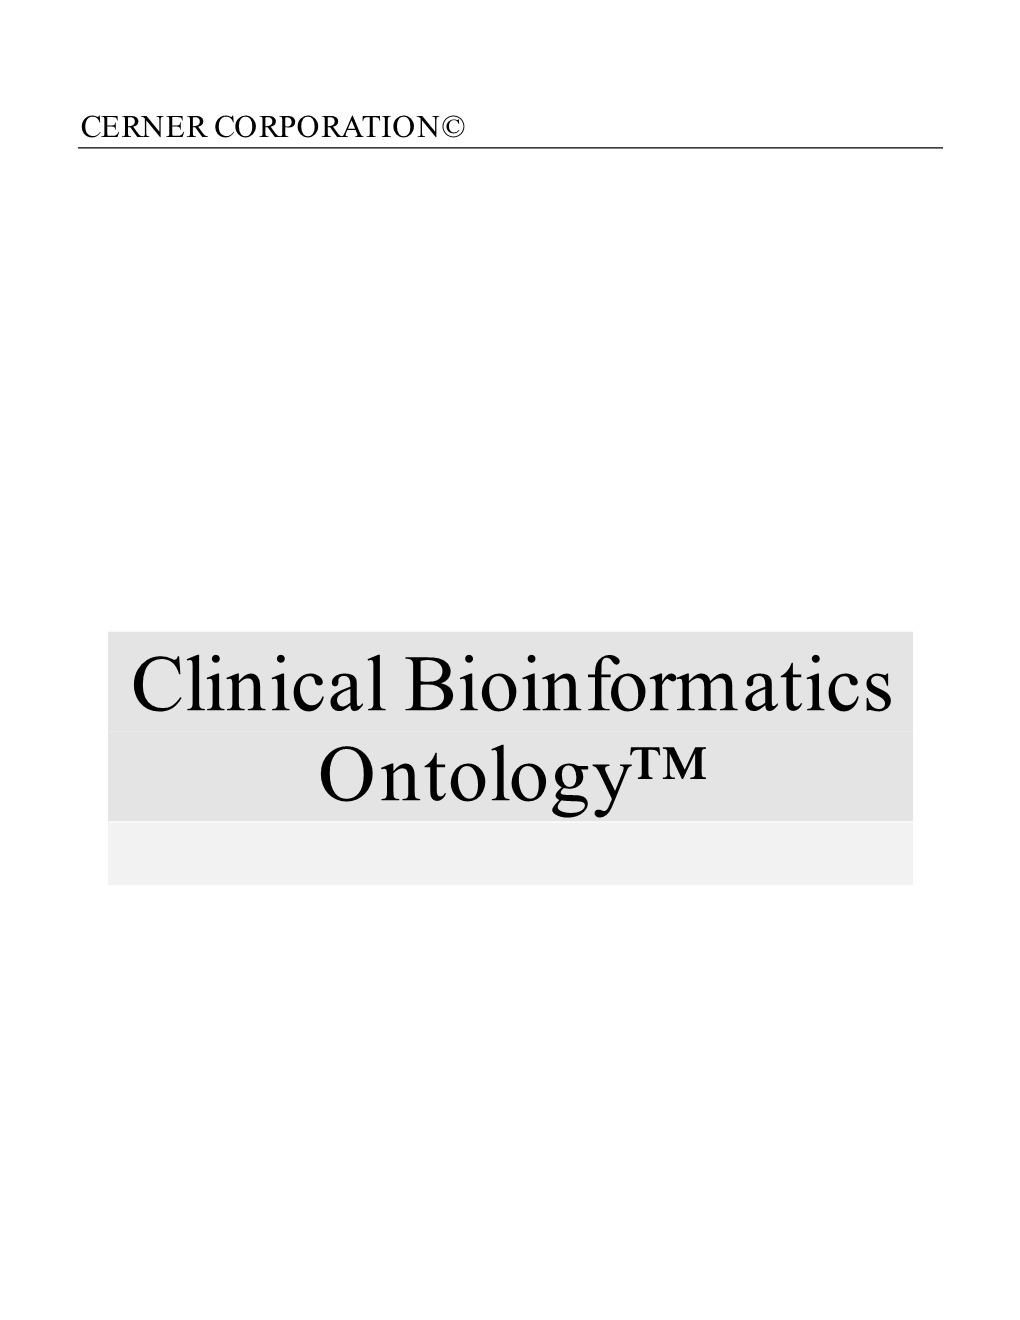 Clinical Bioinformatics Ontology™